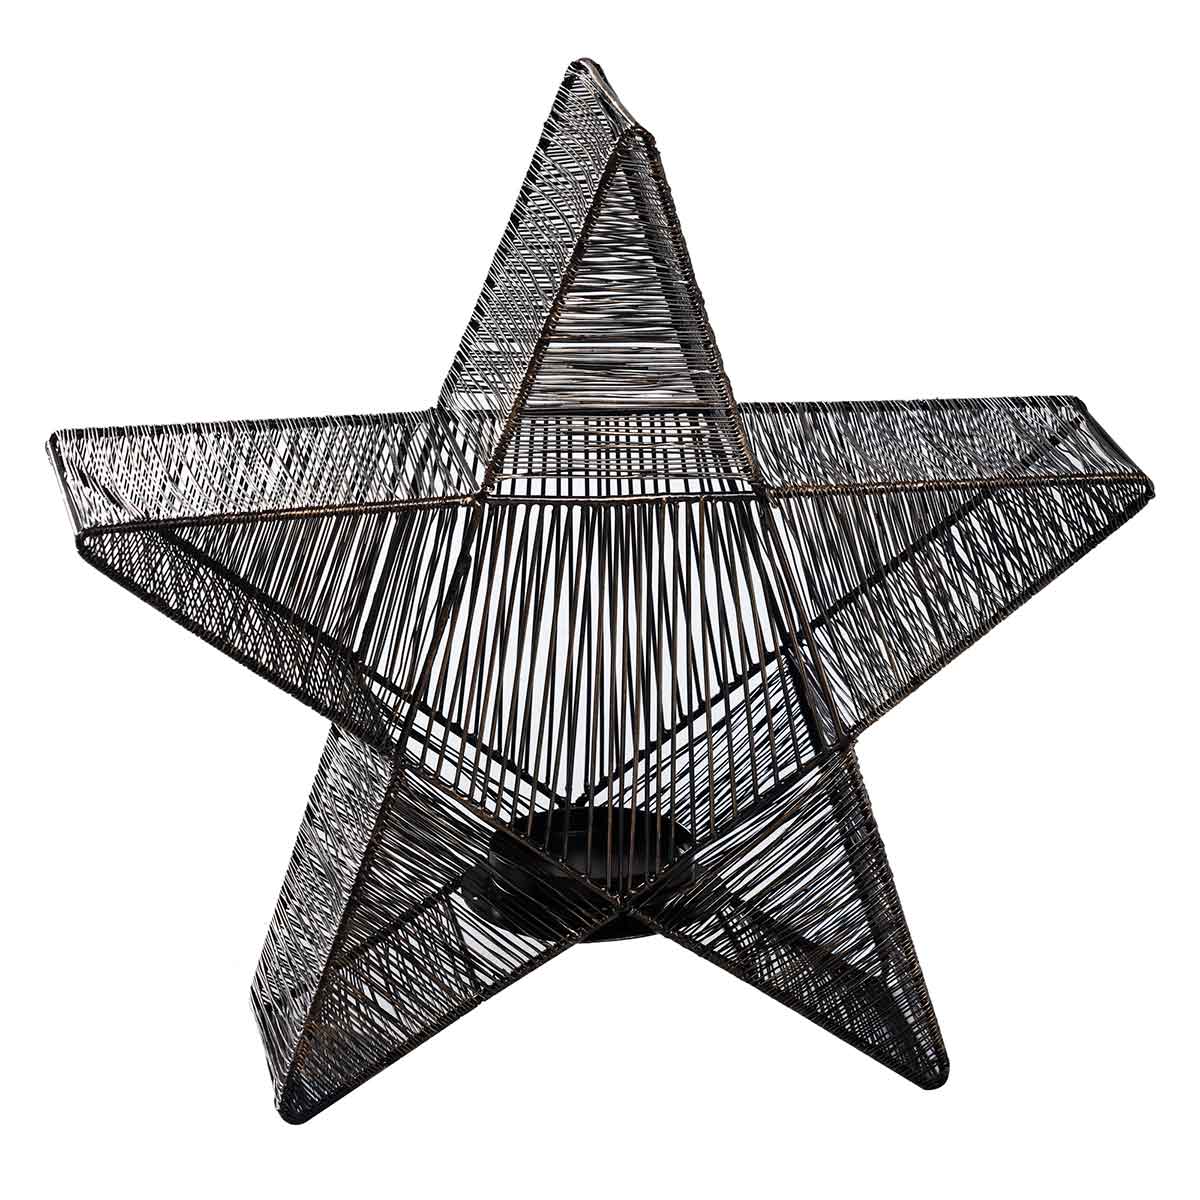 Ptmd décoration de noël bibi - 40x10x40 cm - le fer - noir